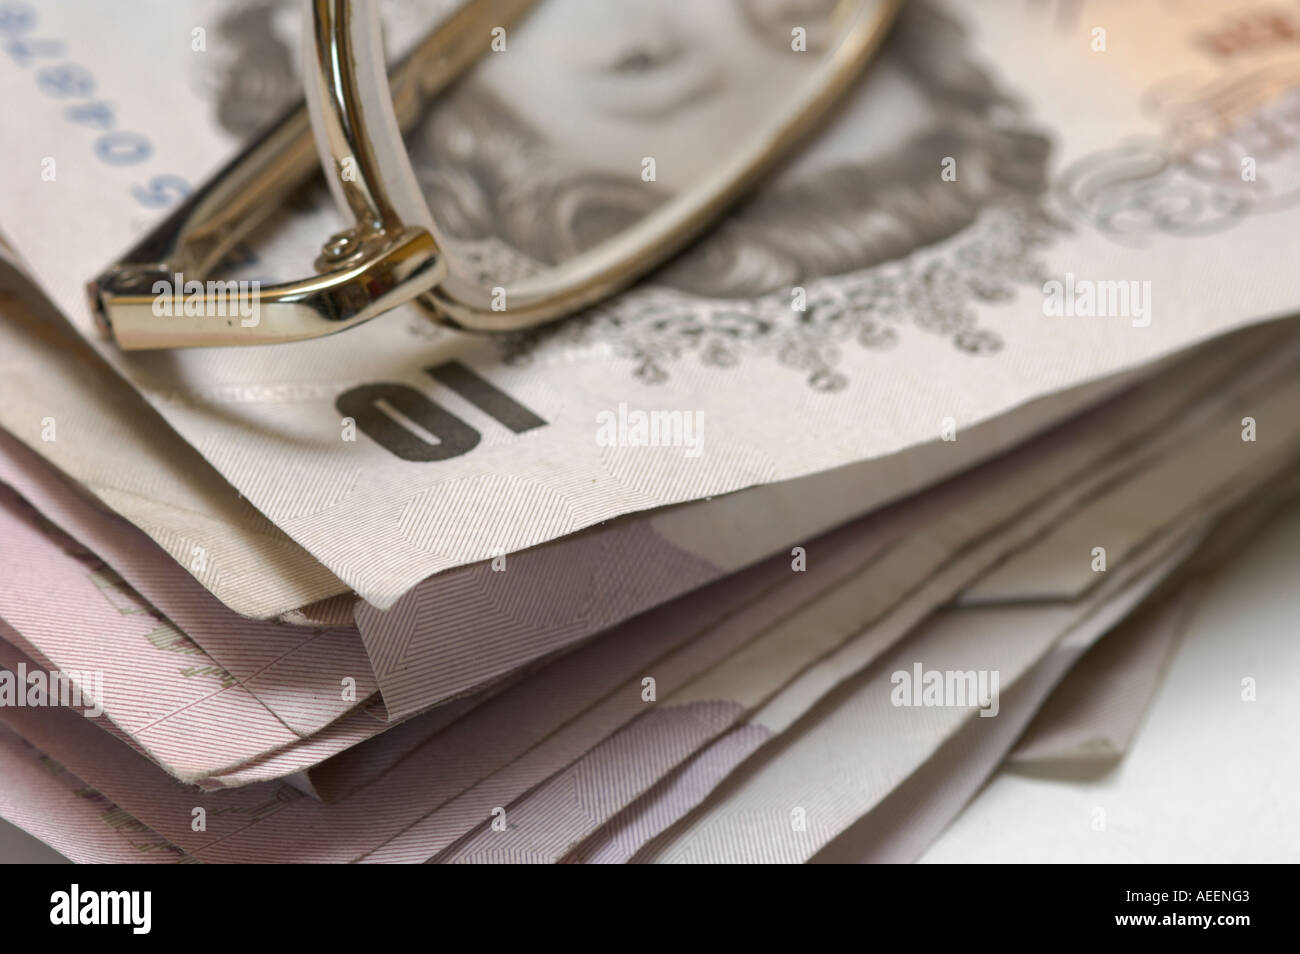 Stapel von verwendet britische Banknoten gemischte Konfessionen mit Metall gerahmte Brille an der Spitze Stockfoto